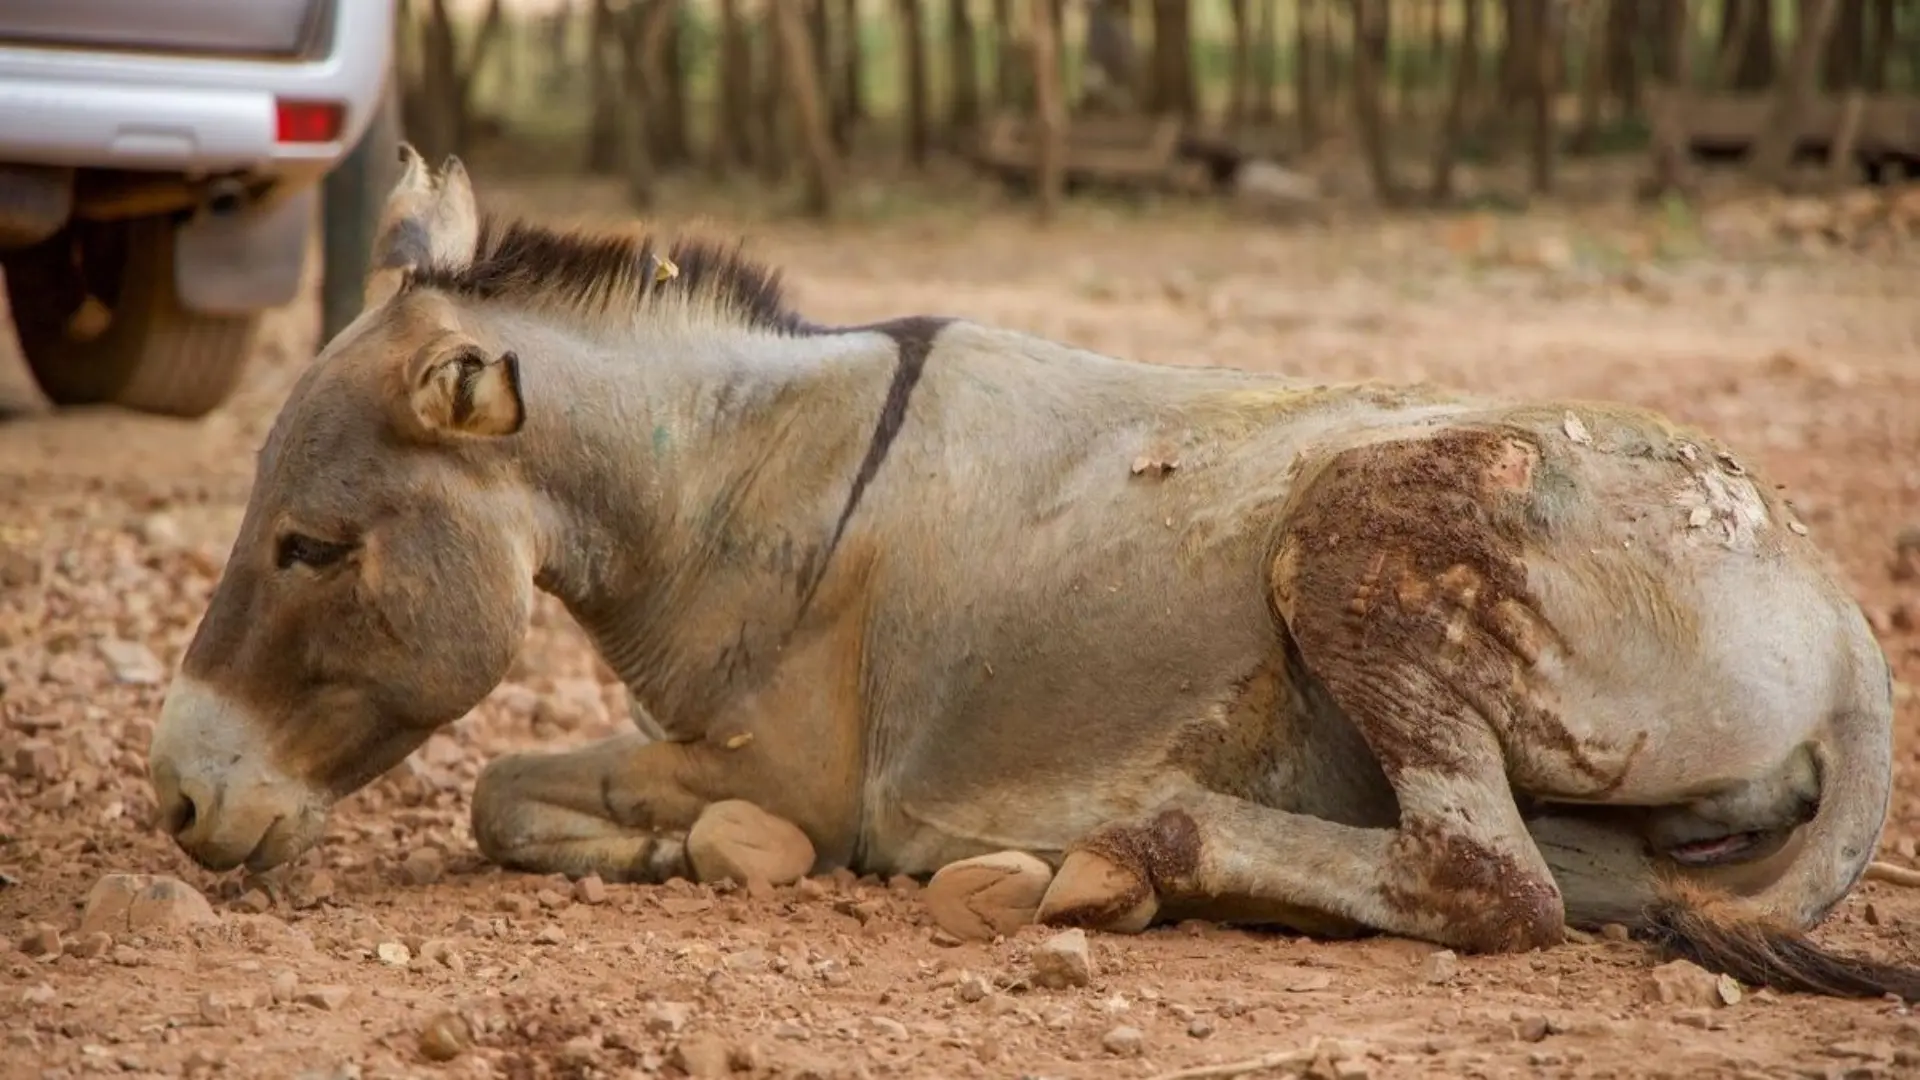 Feudal lord in Jhang breaks donkey’s legs for entering farm